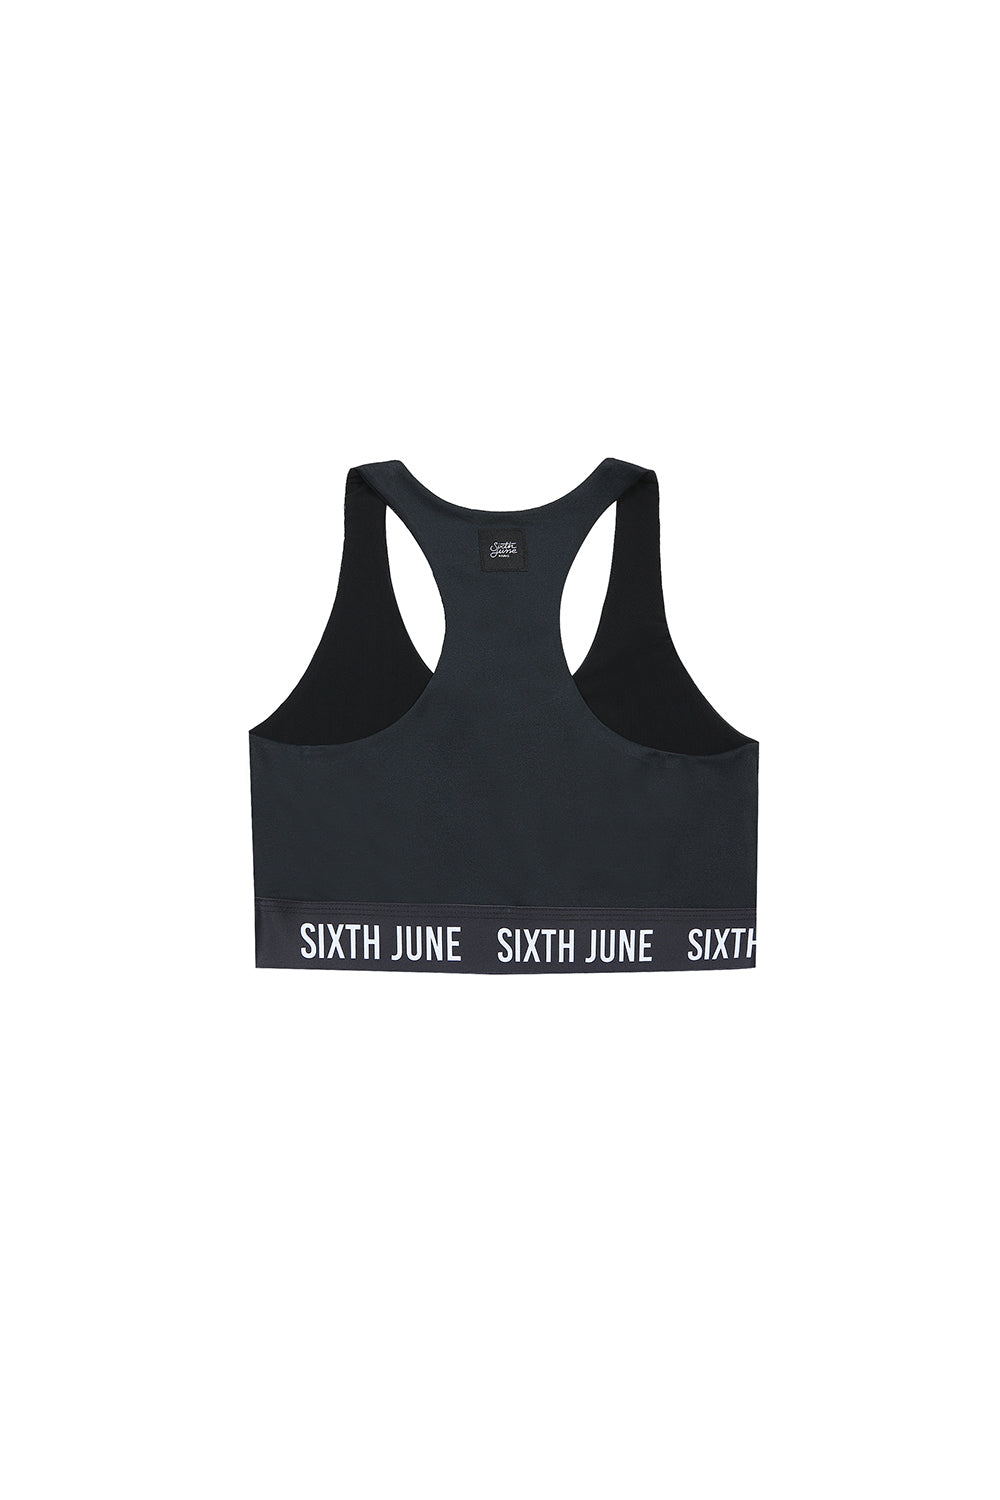 Sixth June - Brassière bande logo Sport noir W2396WTO